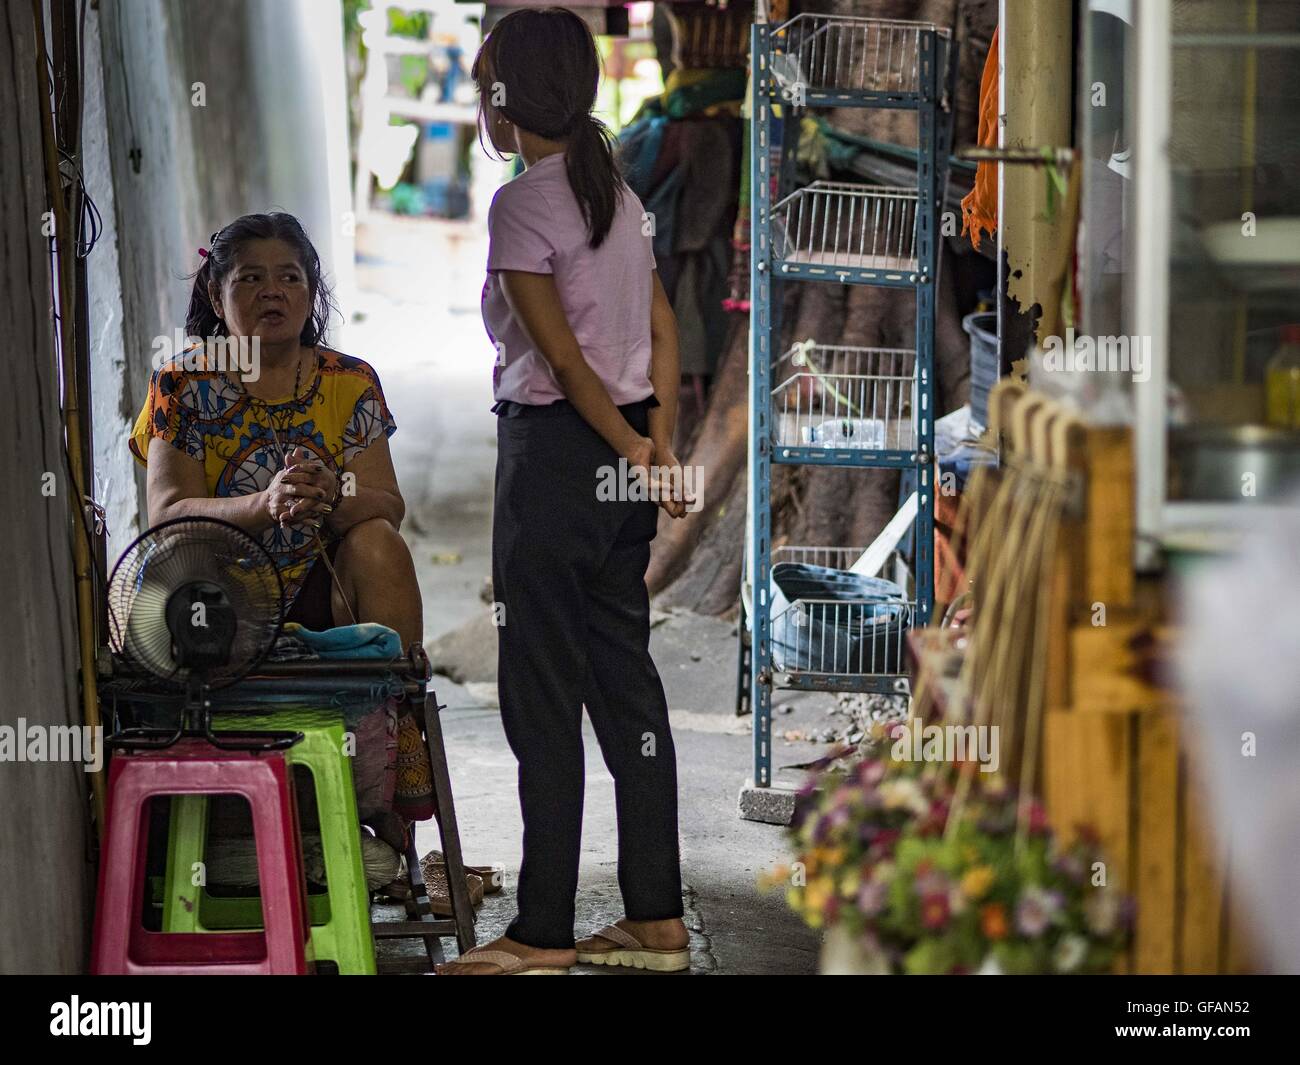 Luglio 30, 2016 - Bangkok Bangkok, Thailandia - Donne in chat in un vicolo del Pom Makahan Fort slum. I residenti delle baraccopoli è stato detto che essi devono lasciare il forte e che la loro comunità saranno abbattute. Mahakan Fort fu costruita nel 1783 durante il regno del re Siamese Rama I. era uno dei 14 fortezze progettato per proteggere Bangkok da invasori stranieri. Solo dei due rimanenti, le altre sono state abbattute. Una comunità sviluppata nel forte quando la gente ha cominciato a costruire case e passando in esso durante il regno del Re Rama V (1868-1910). Il terreno è stato espropriato dalla città di Bangkok di governo Foto Stock